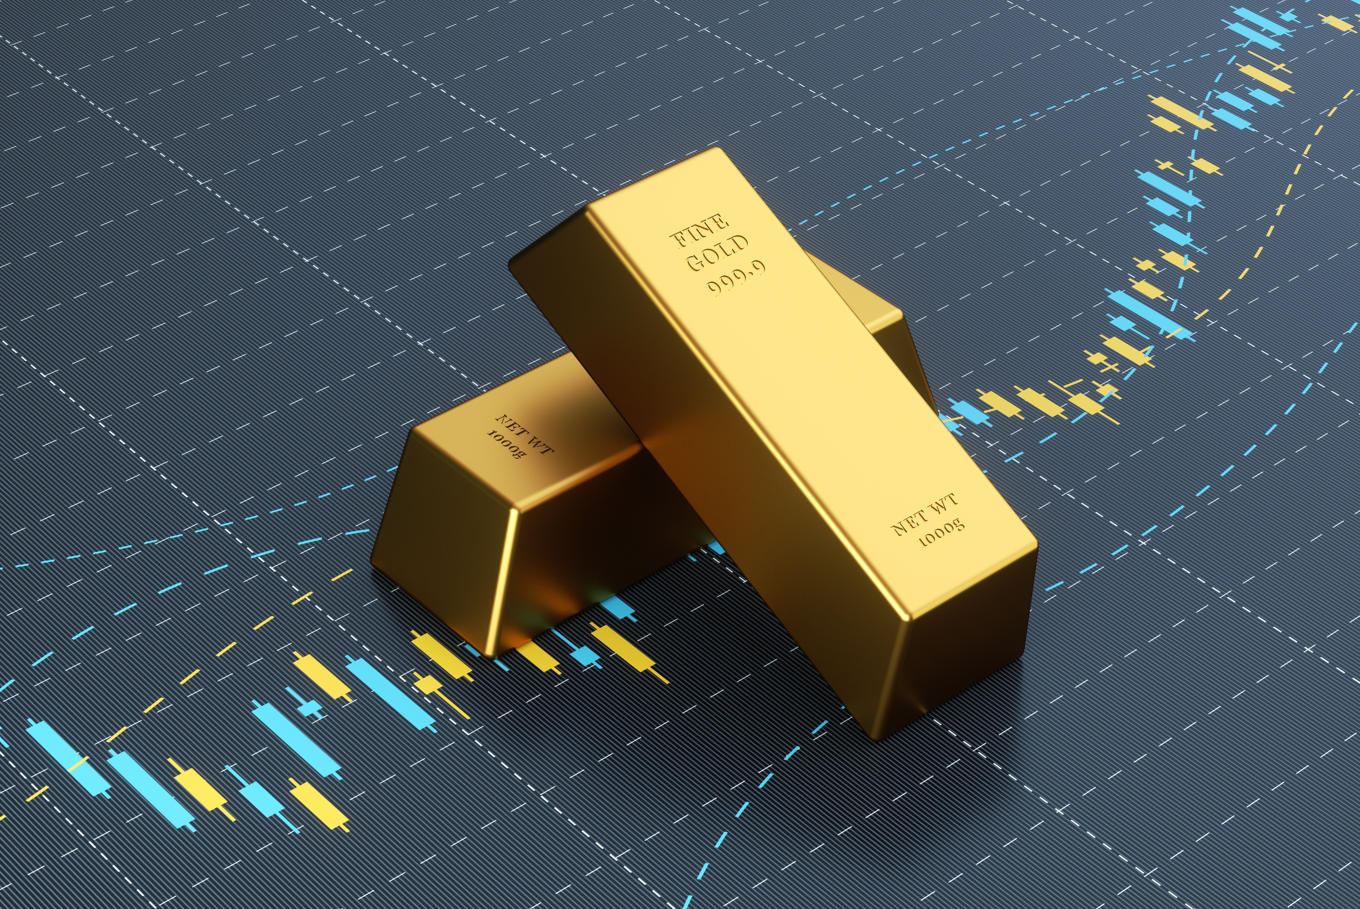 ABD`de para arzının artması durumunda altın ve gümüş yeni fiyat zirvelerini görecektir